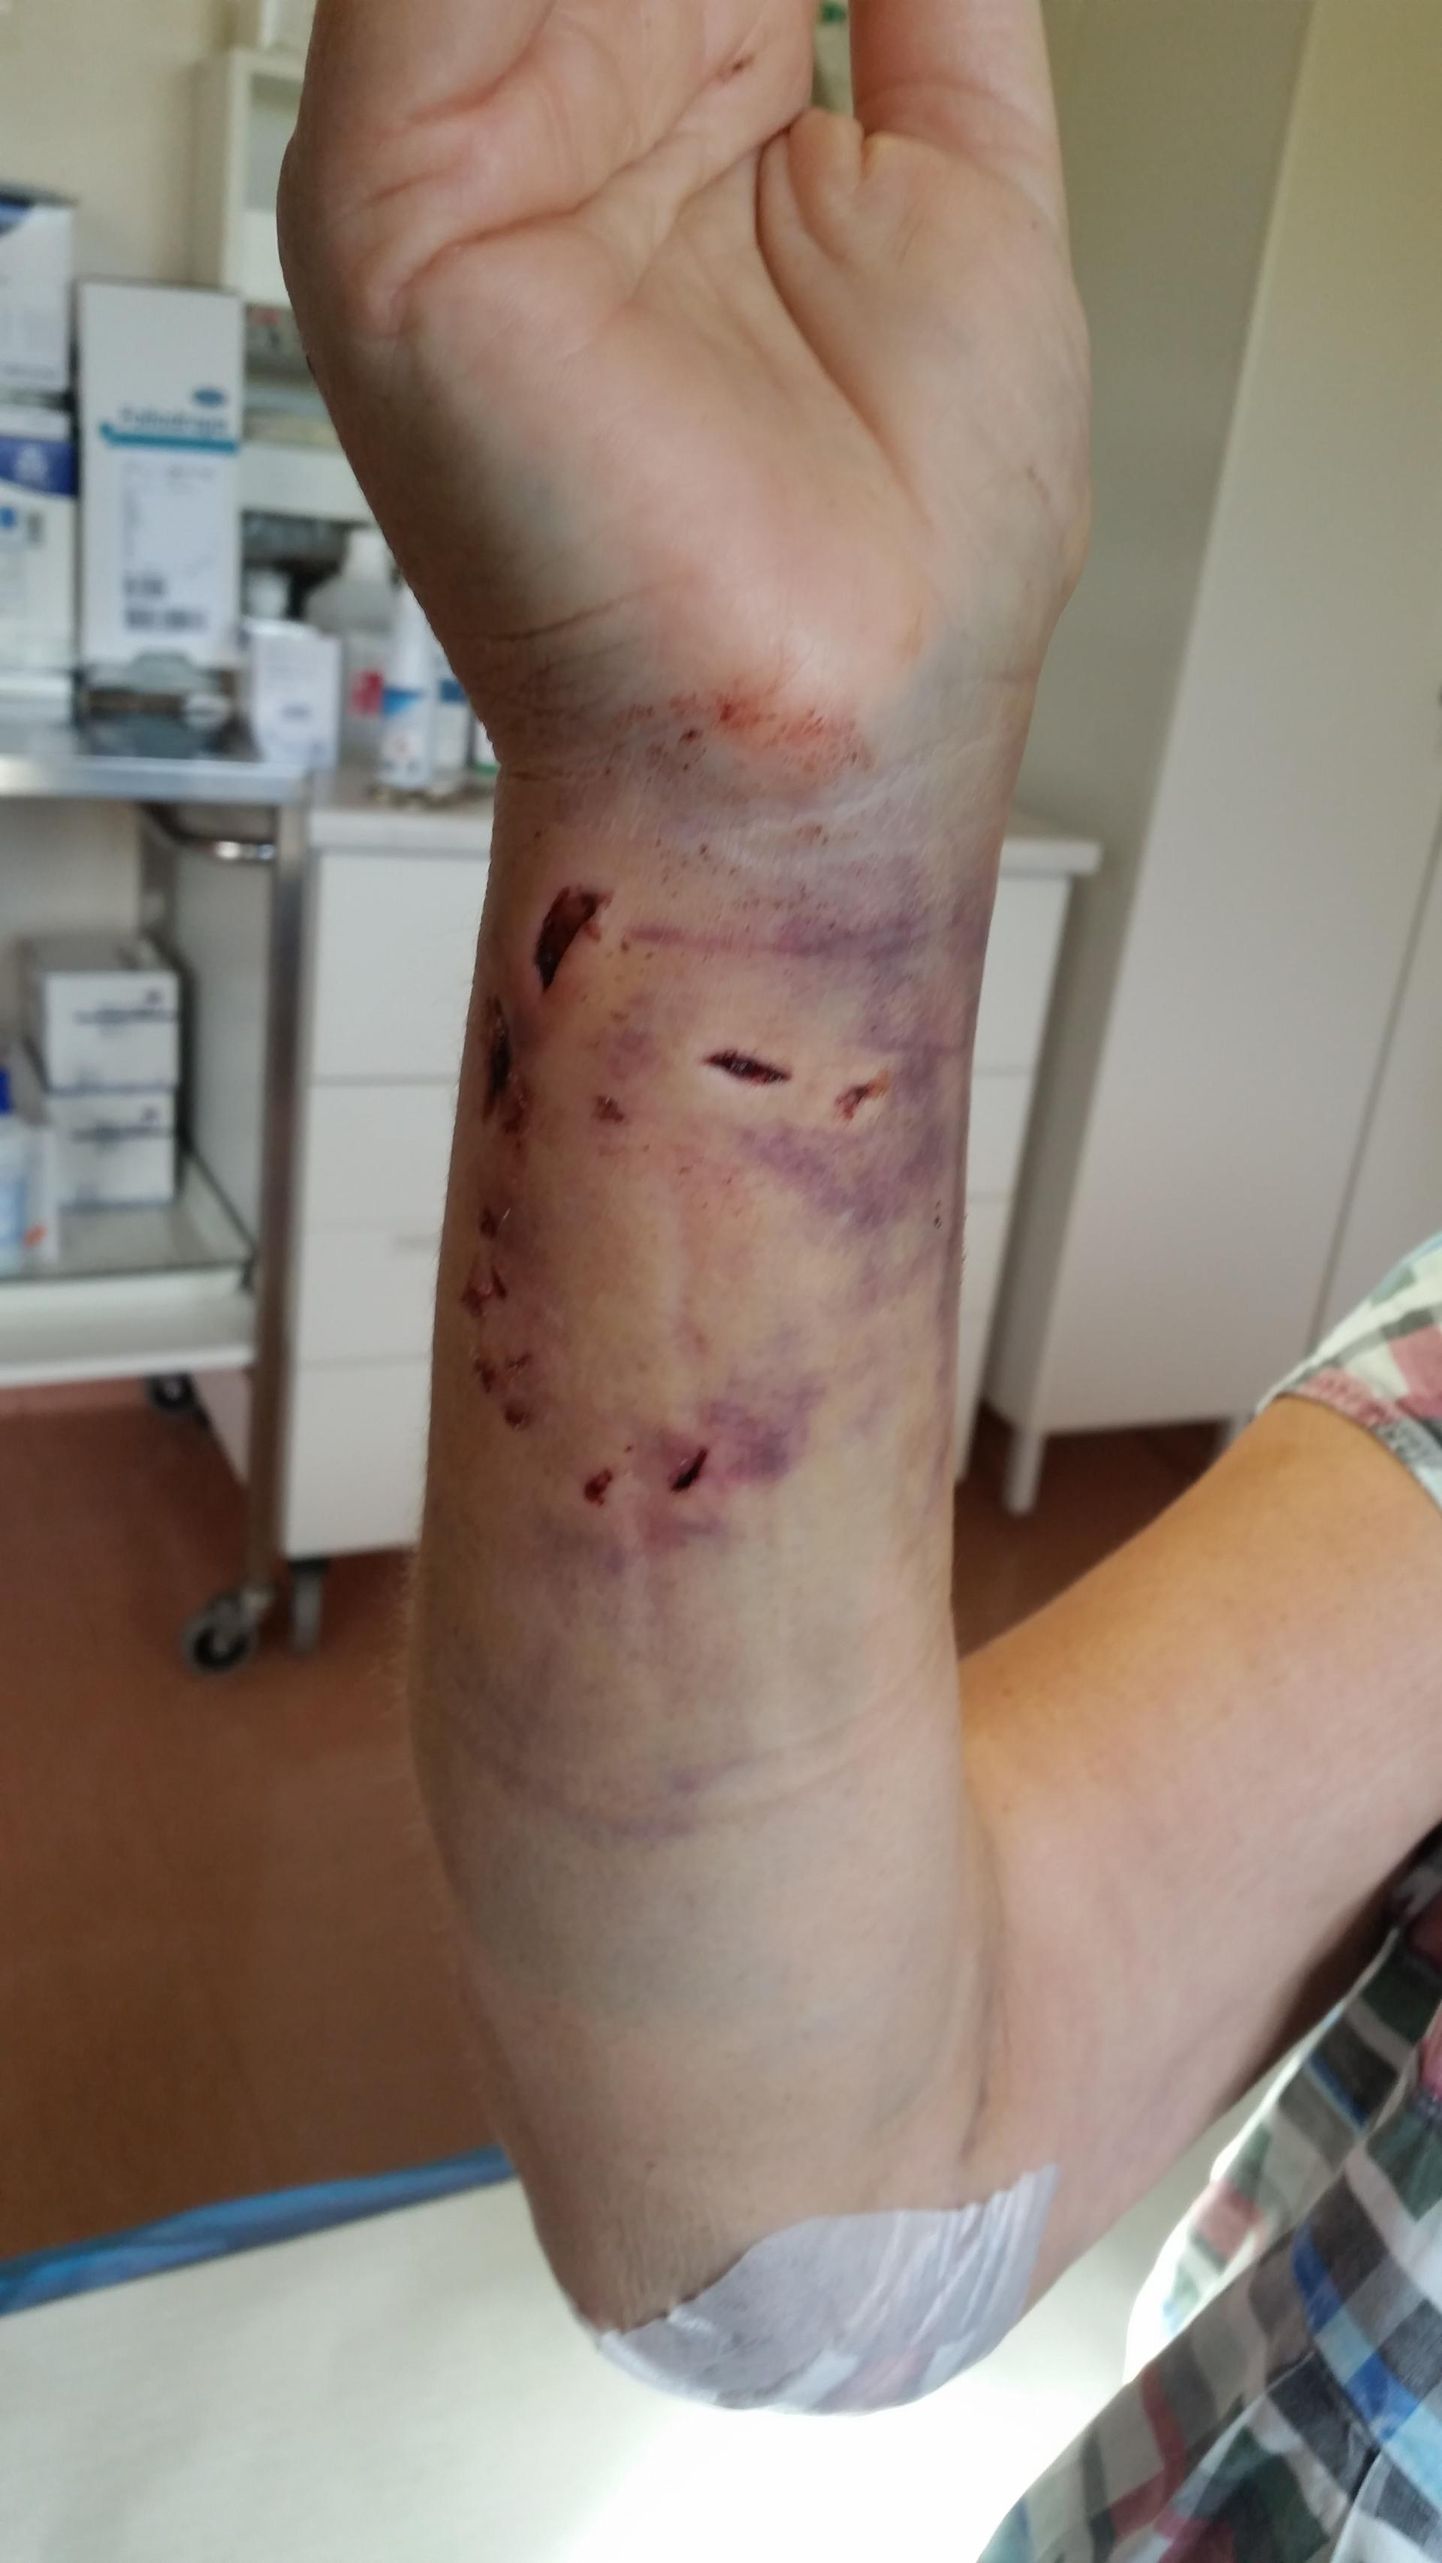 Viga saanud naise murtud luuga käsi pandi viieks nädalaks kipsi ja nädal tuli tal veeta haiglas. Koerad rahunesid siis, kui naine istuli kukkus.